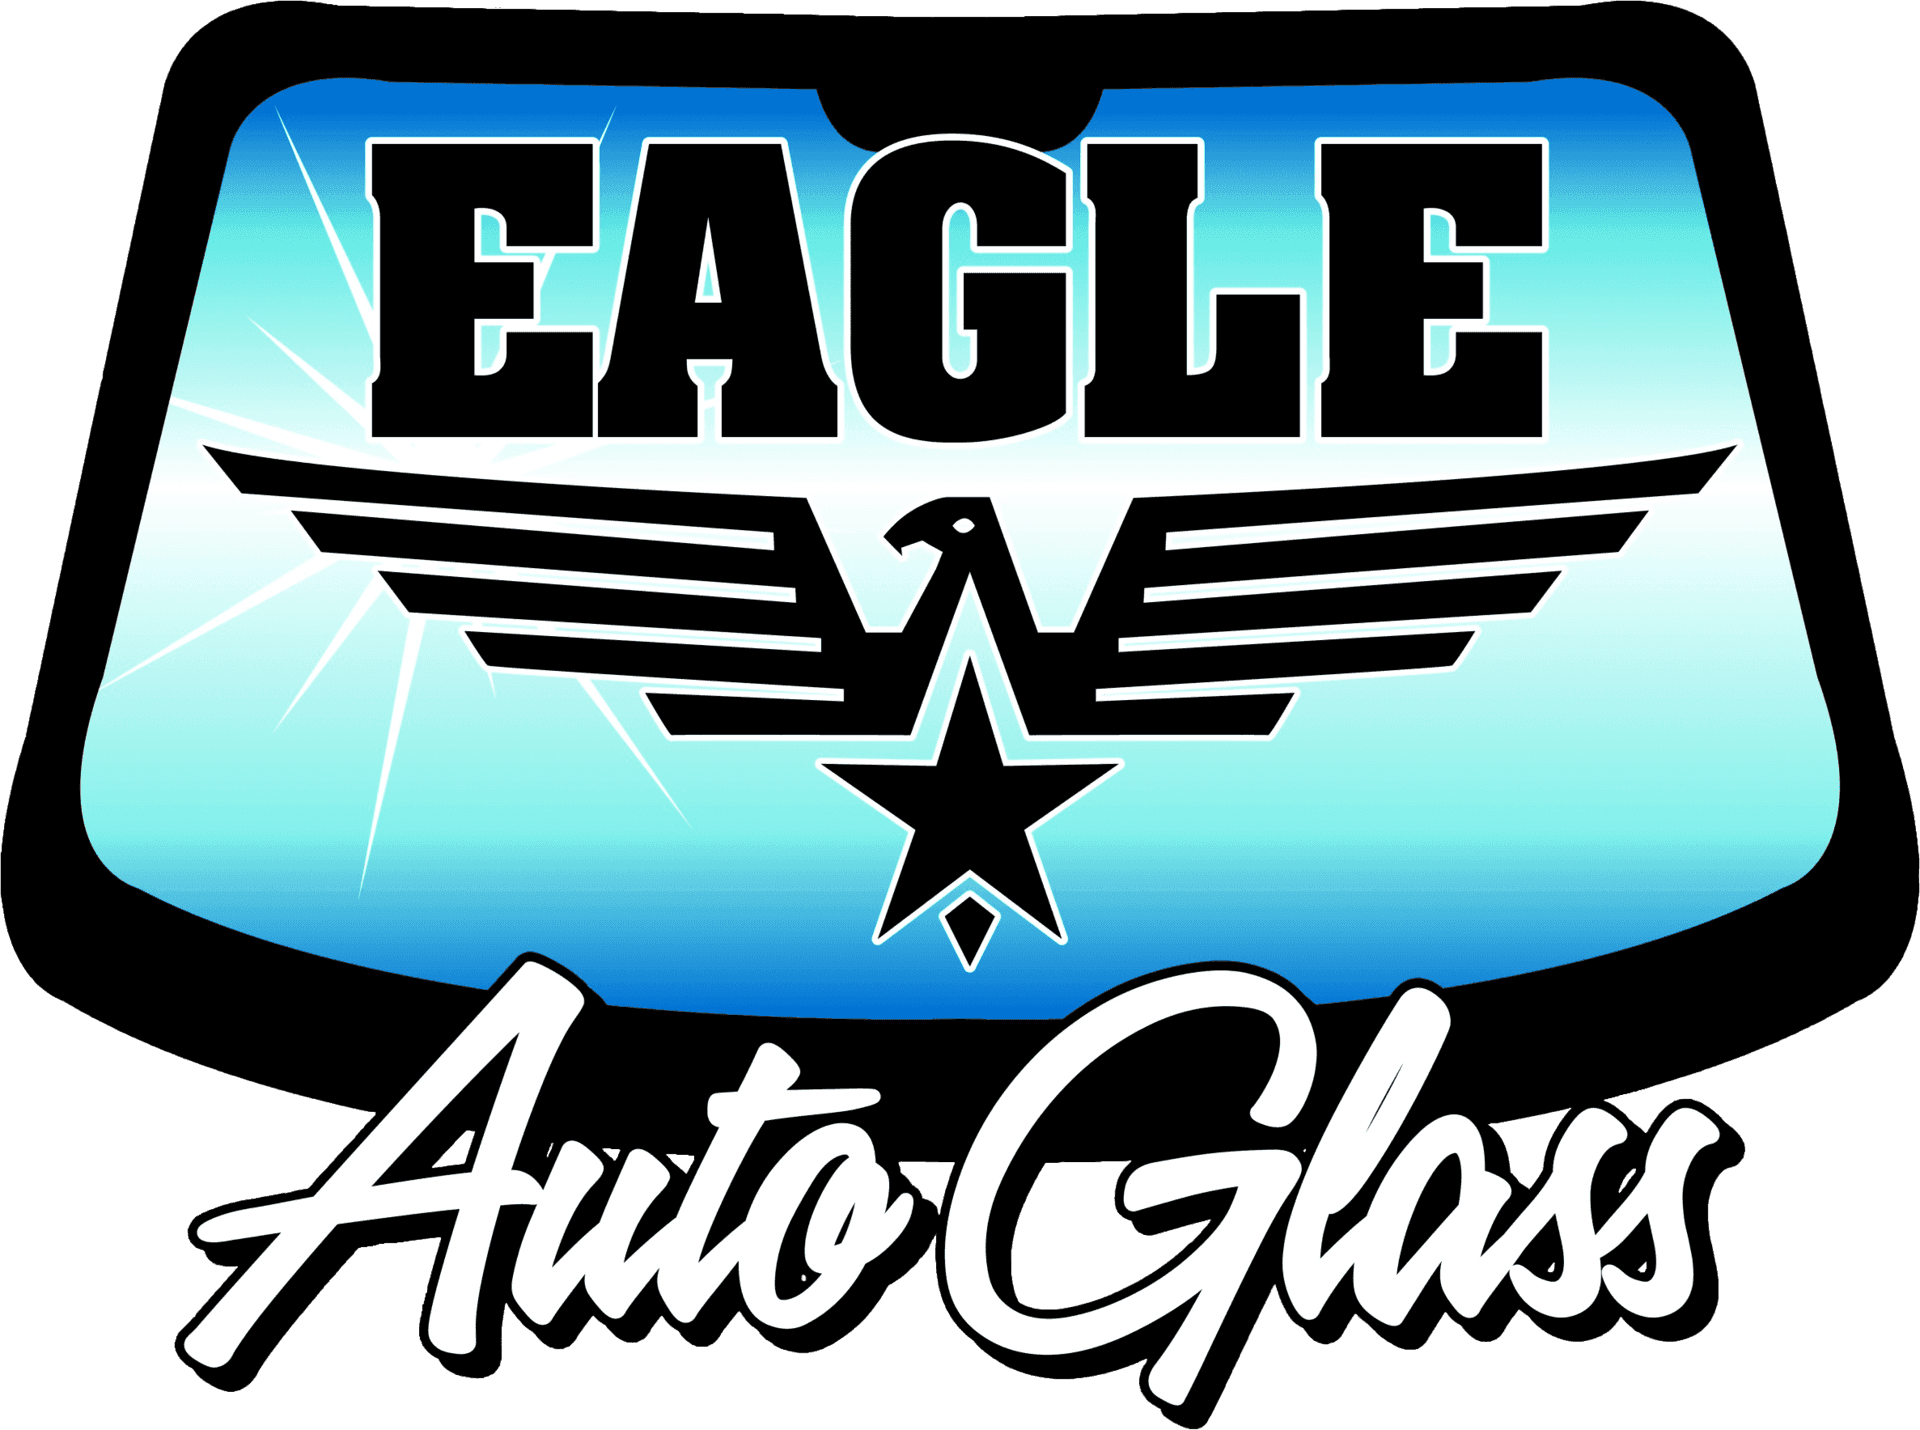 Eagle Auto Glass - logo